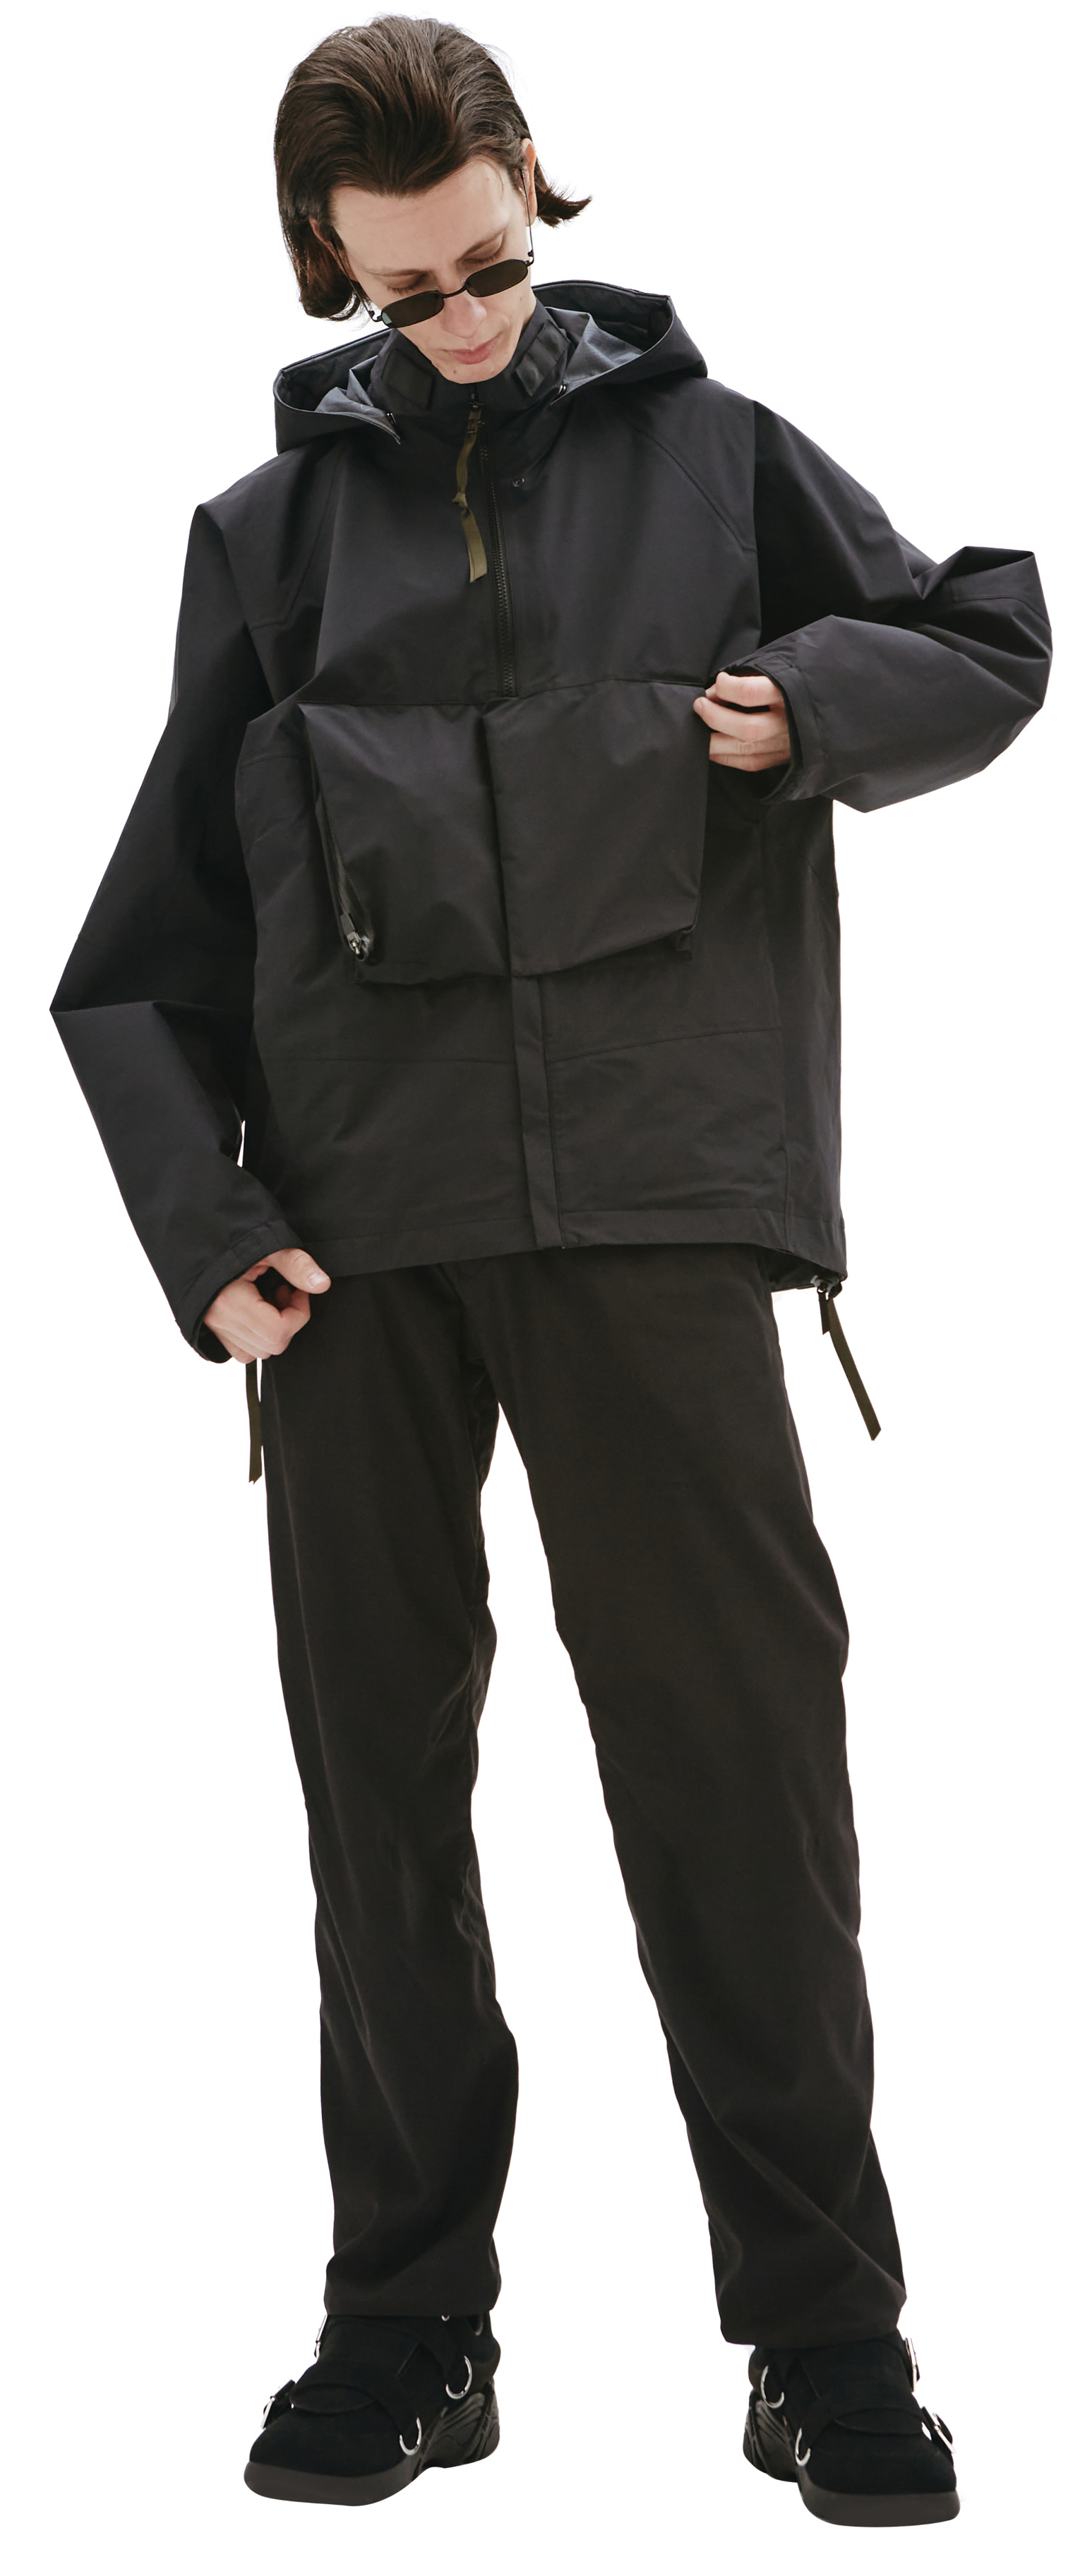 Acronym J96 waterproof jacket